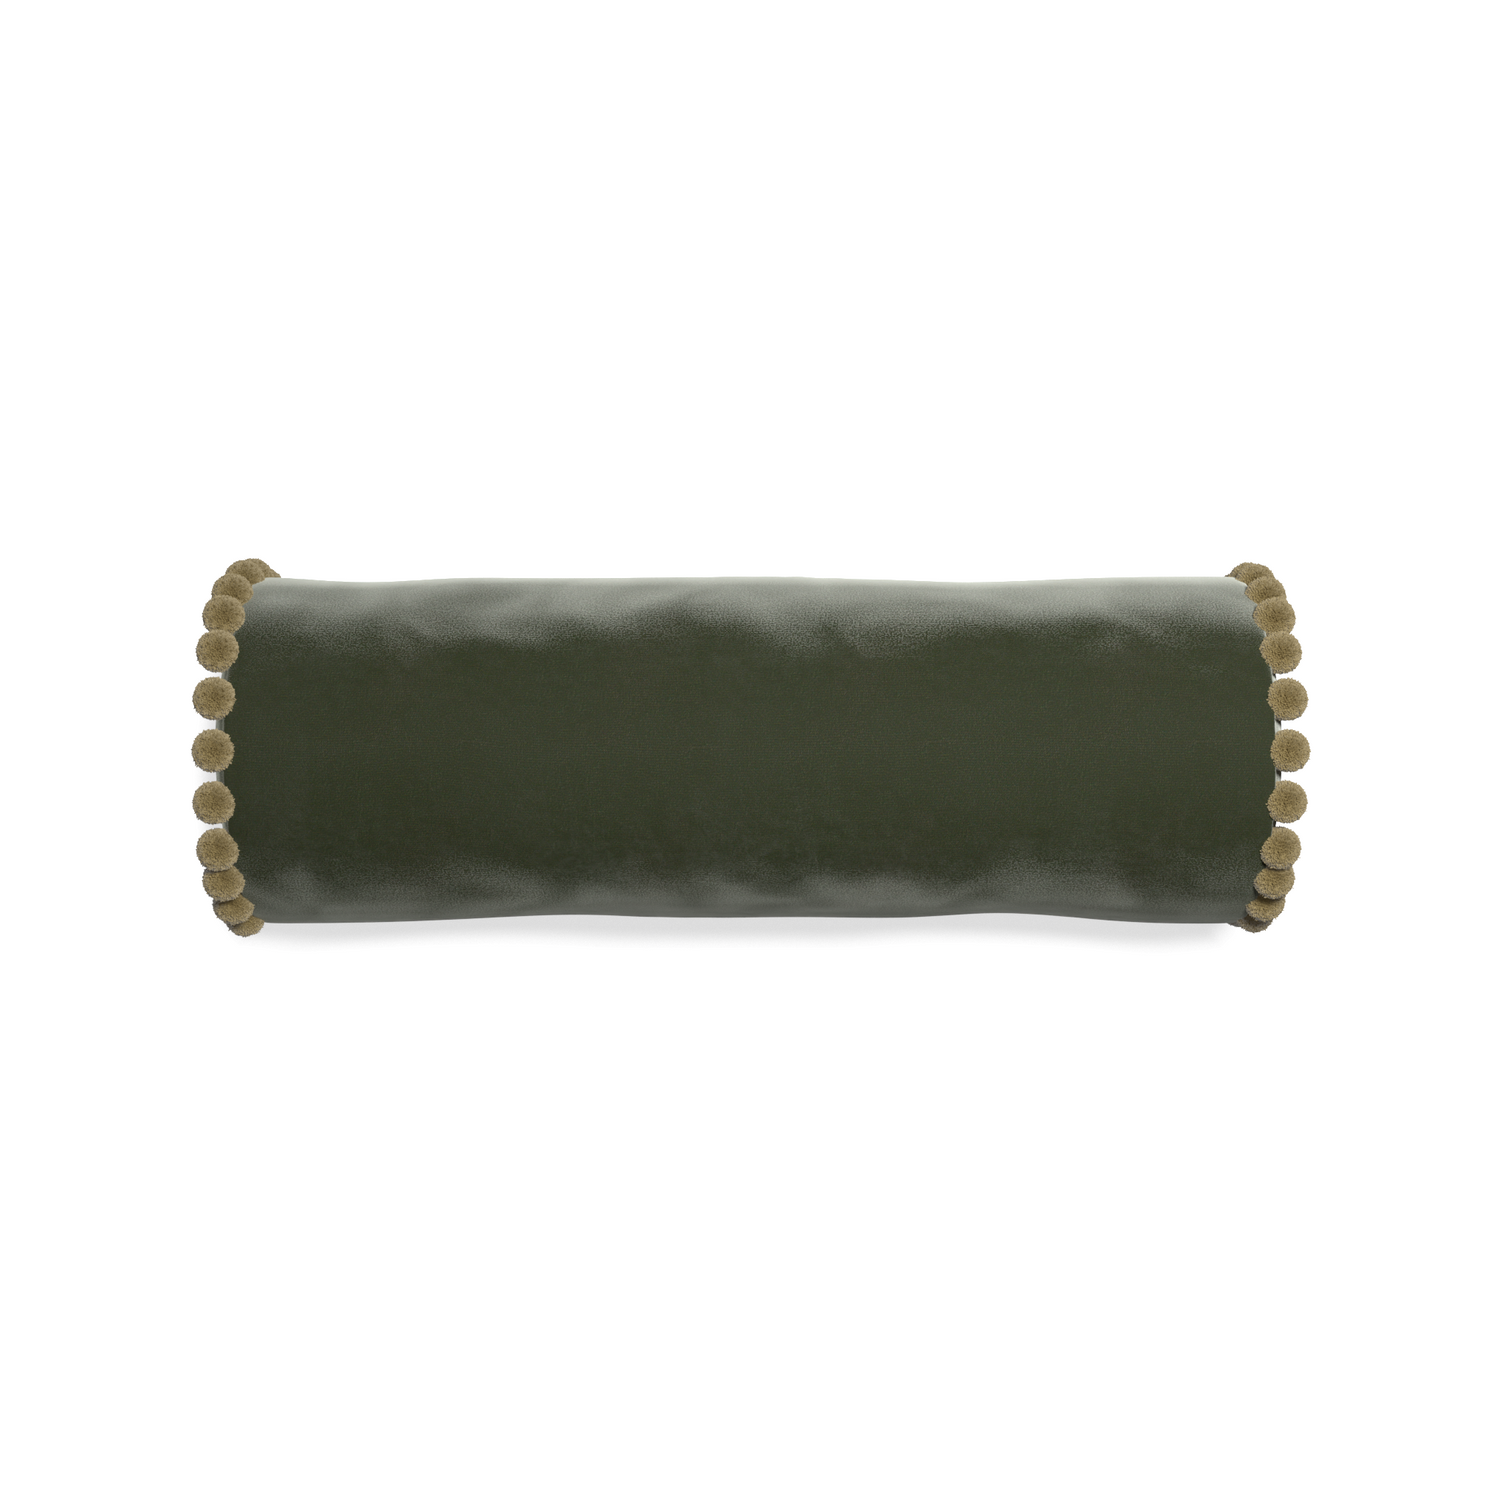 bolster fern green velvet pillow with olive green pom poms